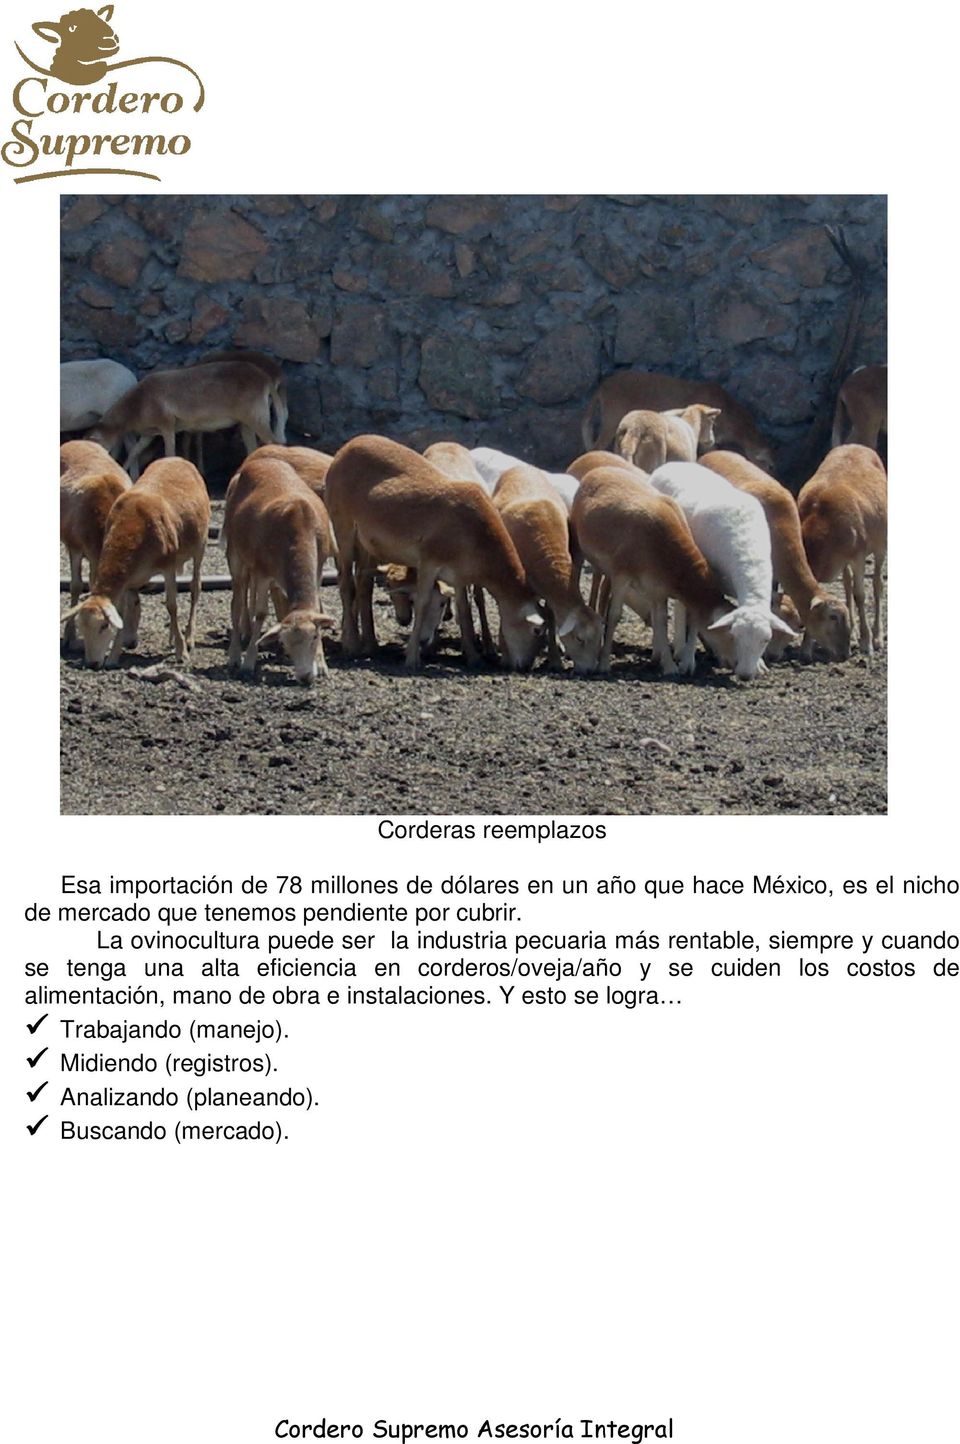 La ovinocultura puede ser la industria pecuaria más rentable, siempre y cuando se tenga una alta eficiencia en